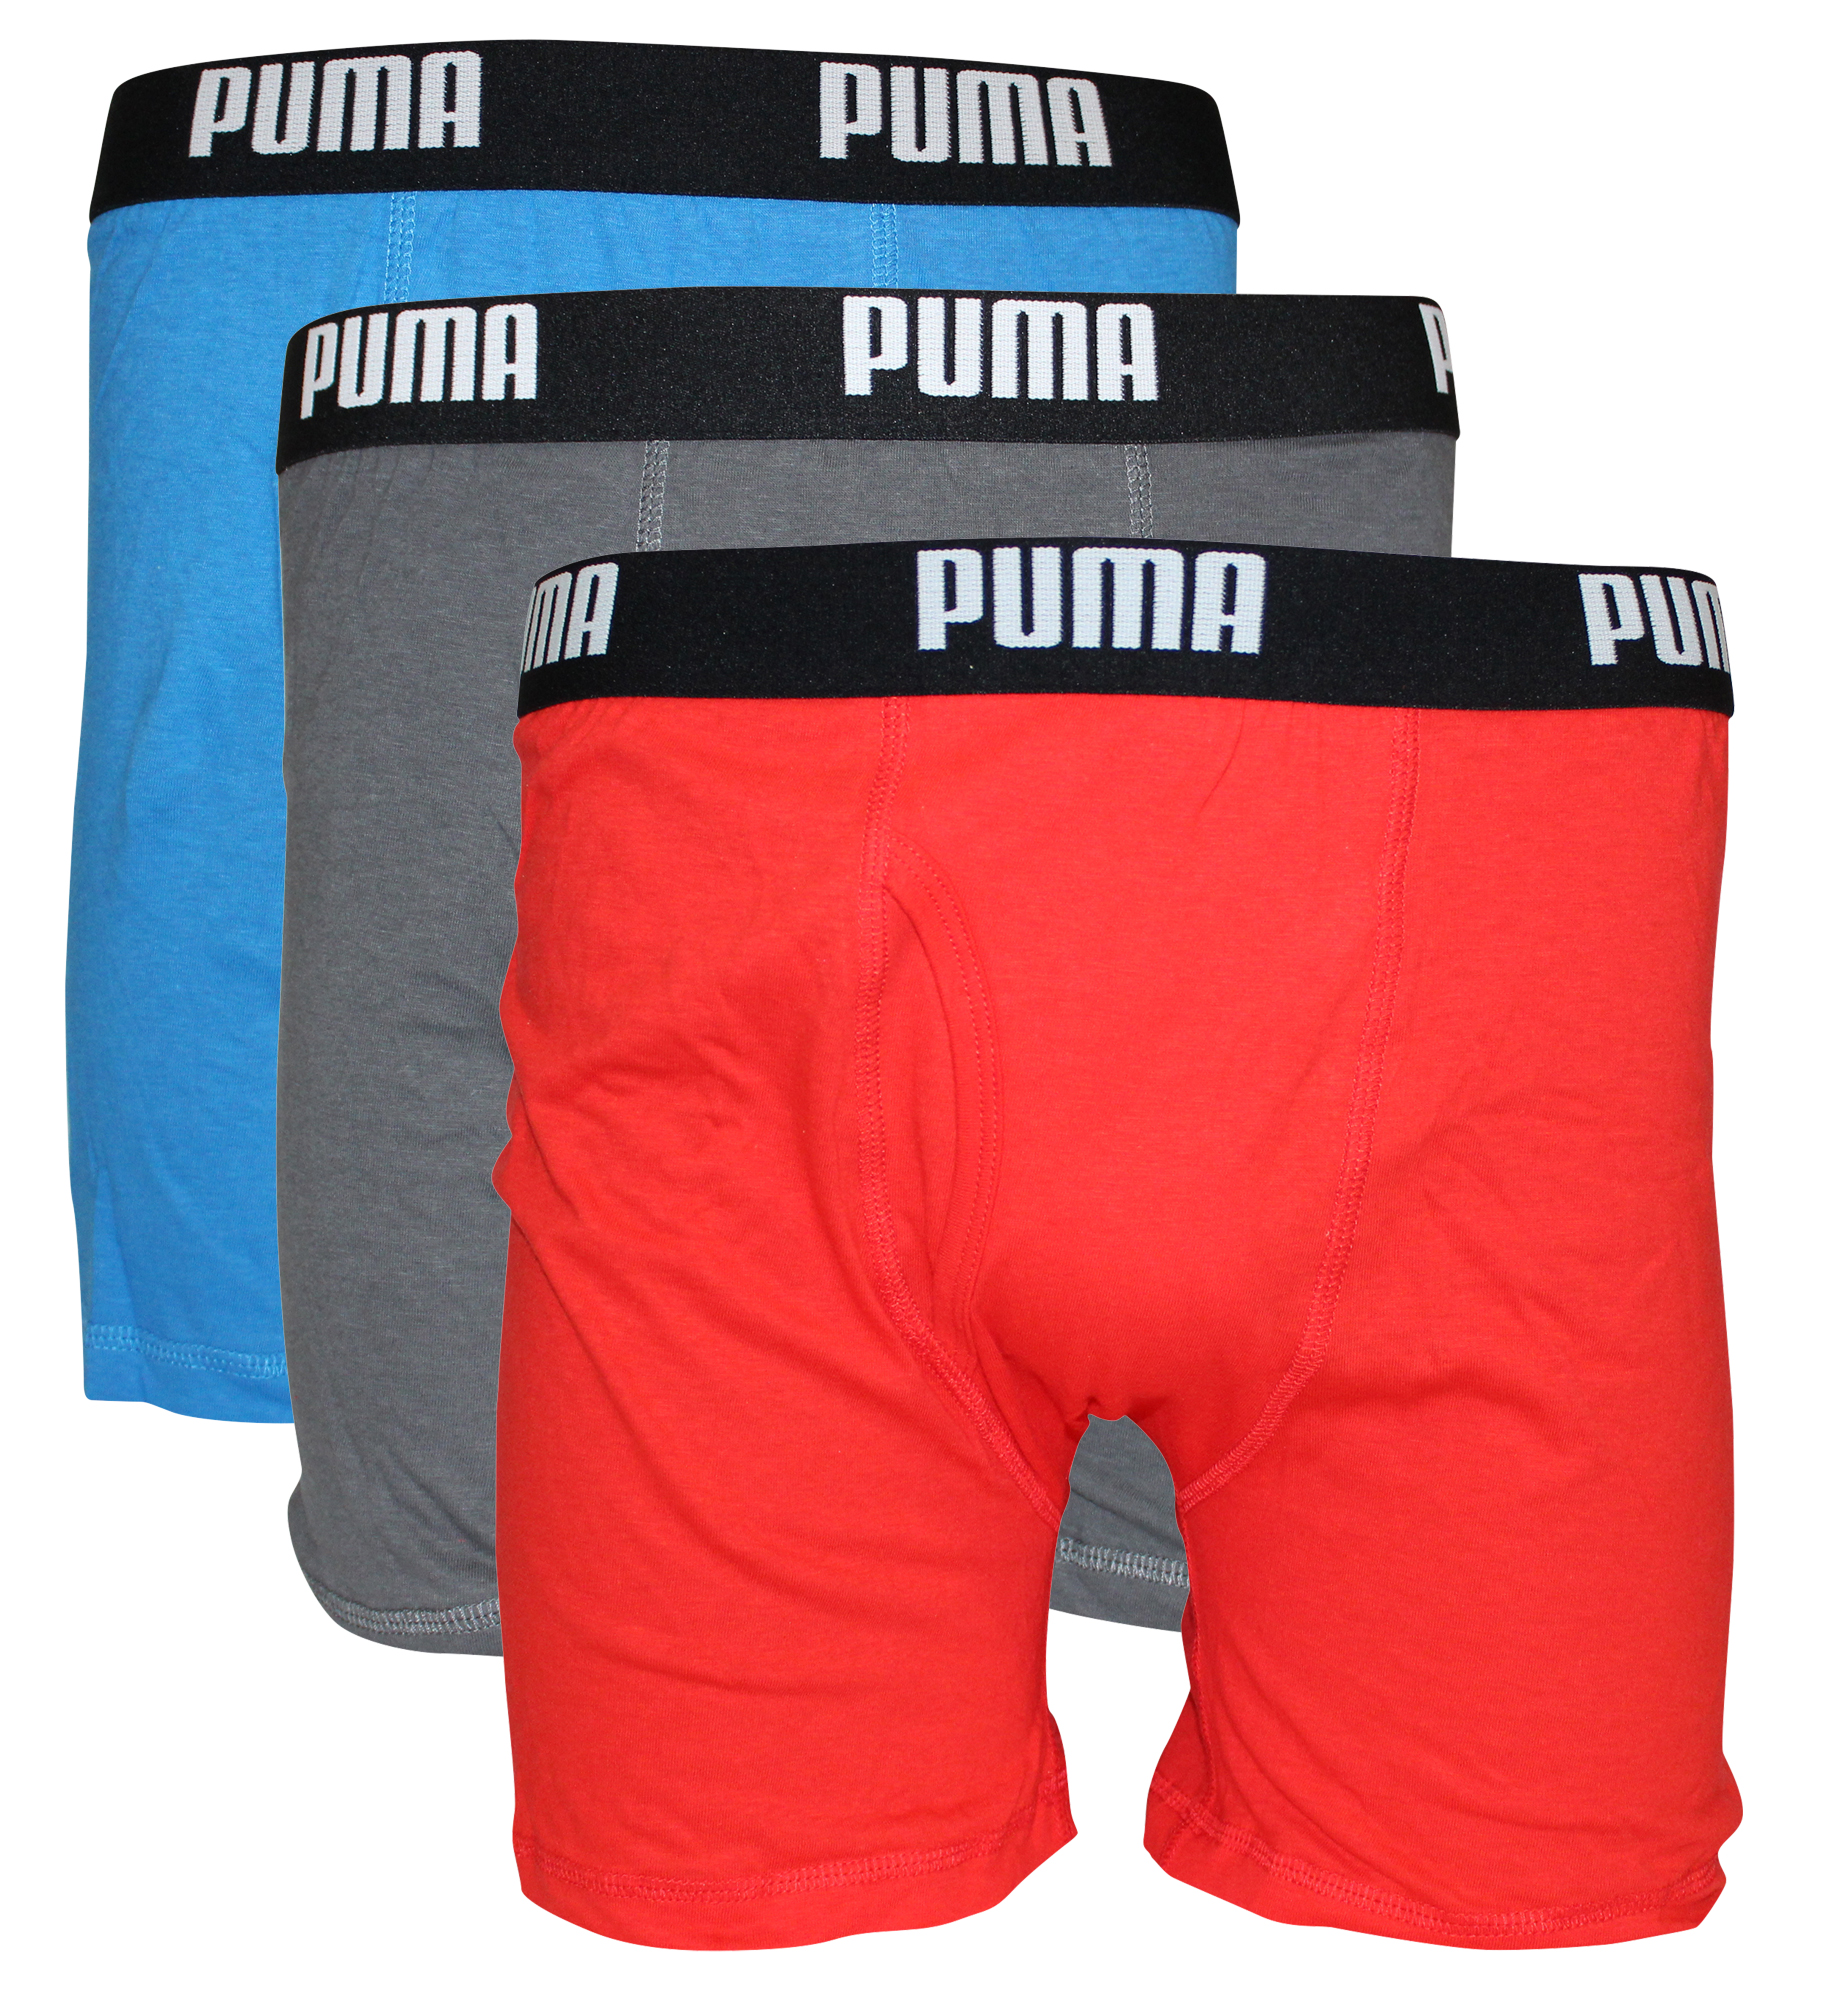 PUMA - PUMA Men's 3 Pack Cotton Boxer Briefs - Walmart.com - Walmart.com